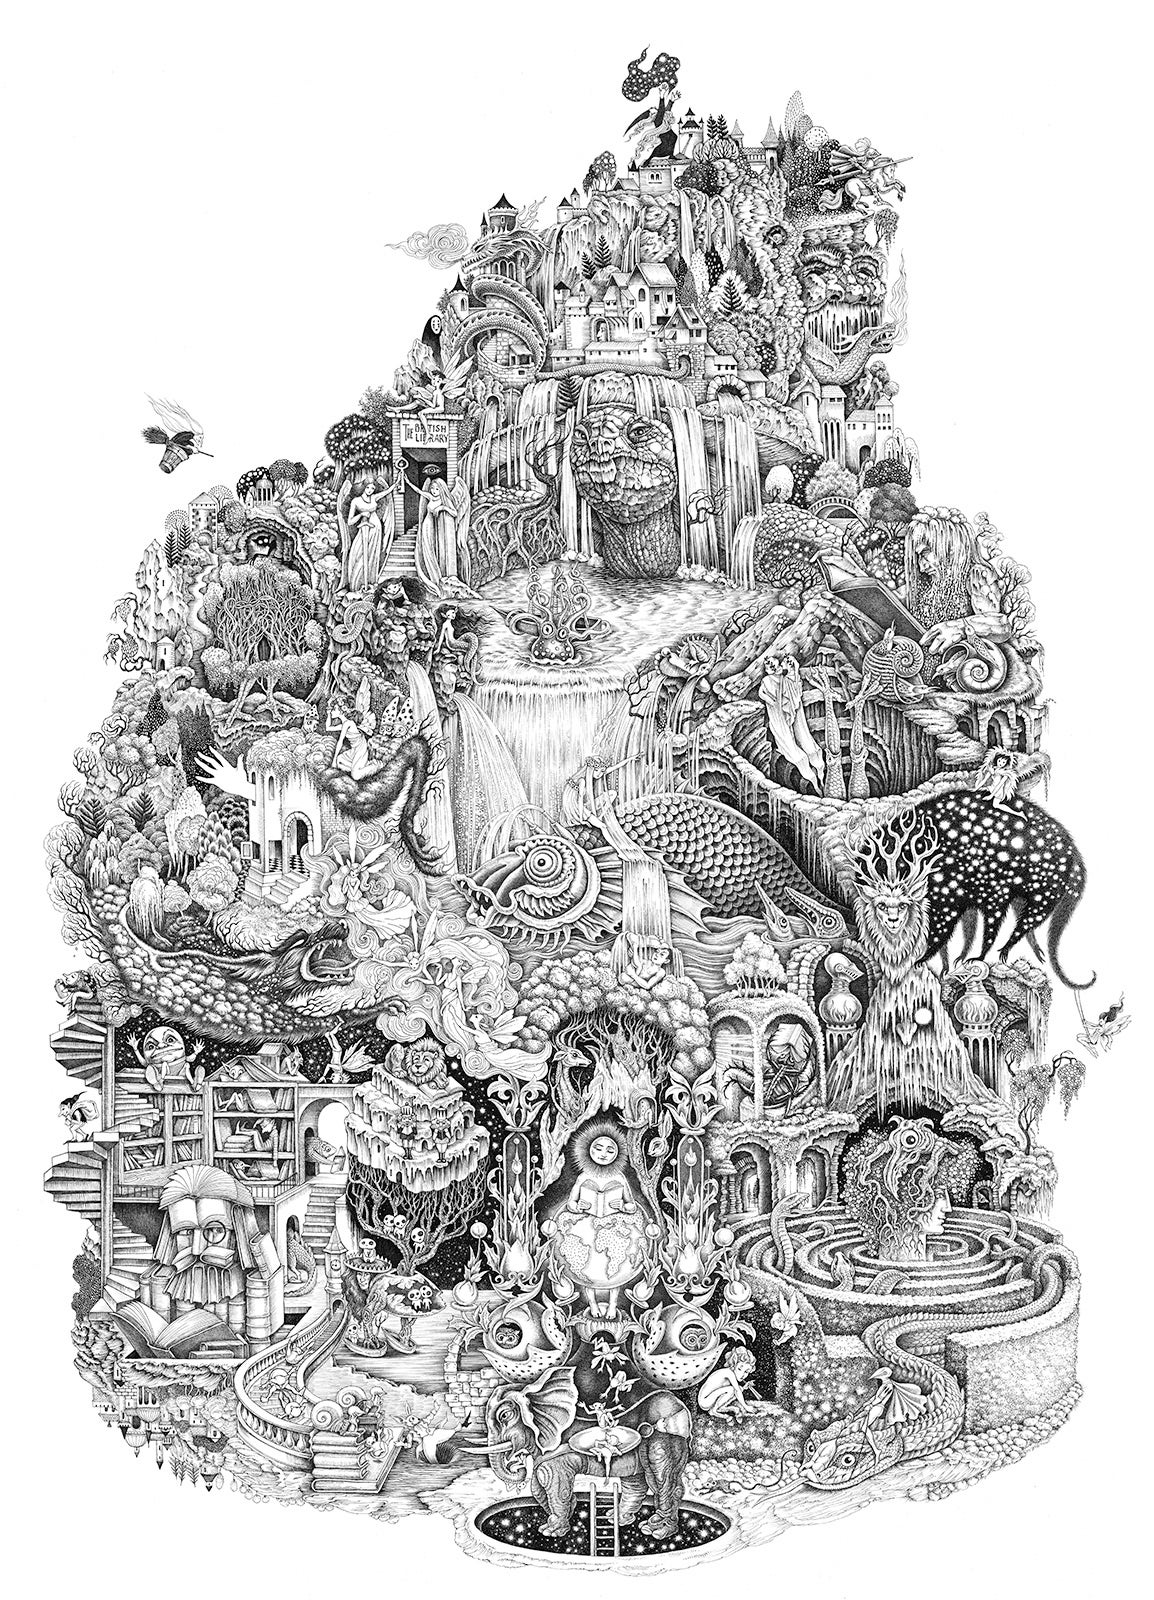 L'immagine del poster in bianco e nero dell'esposizione Fantasy: Reami dell'Immaginazione della British Library. Mostra una sorta di montagna di immagini fantasy schiacciate insieme, tratte da molte delle storie presenti nella mostra. C'è un drago, c'è una fata, e così via.